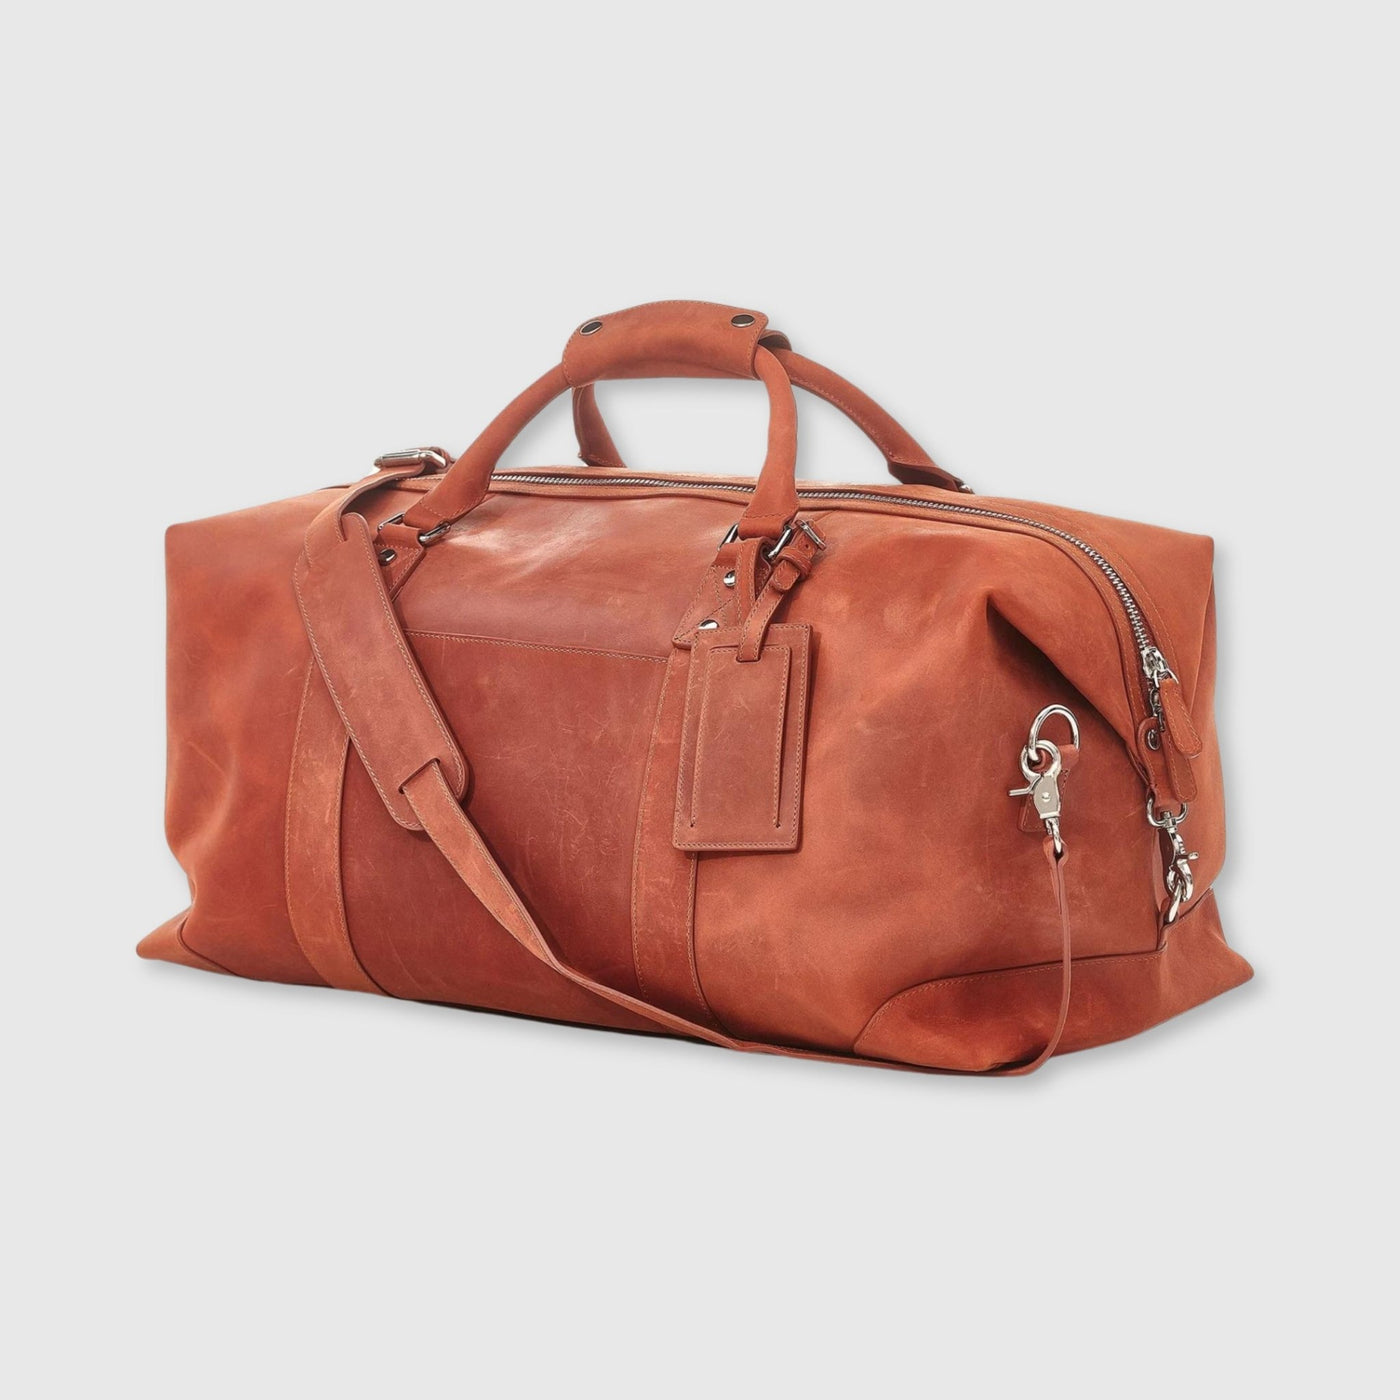 Leather Weekender Bag - Tan - MODEST VINTAGE PLAYER LTD